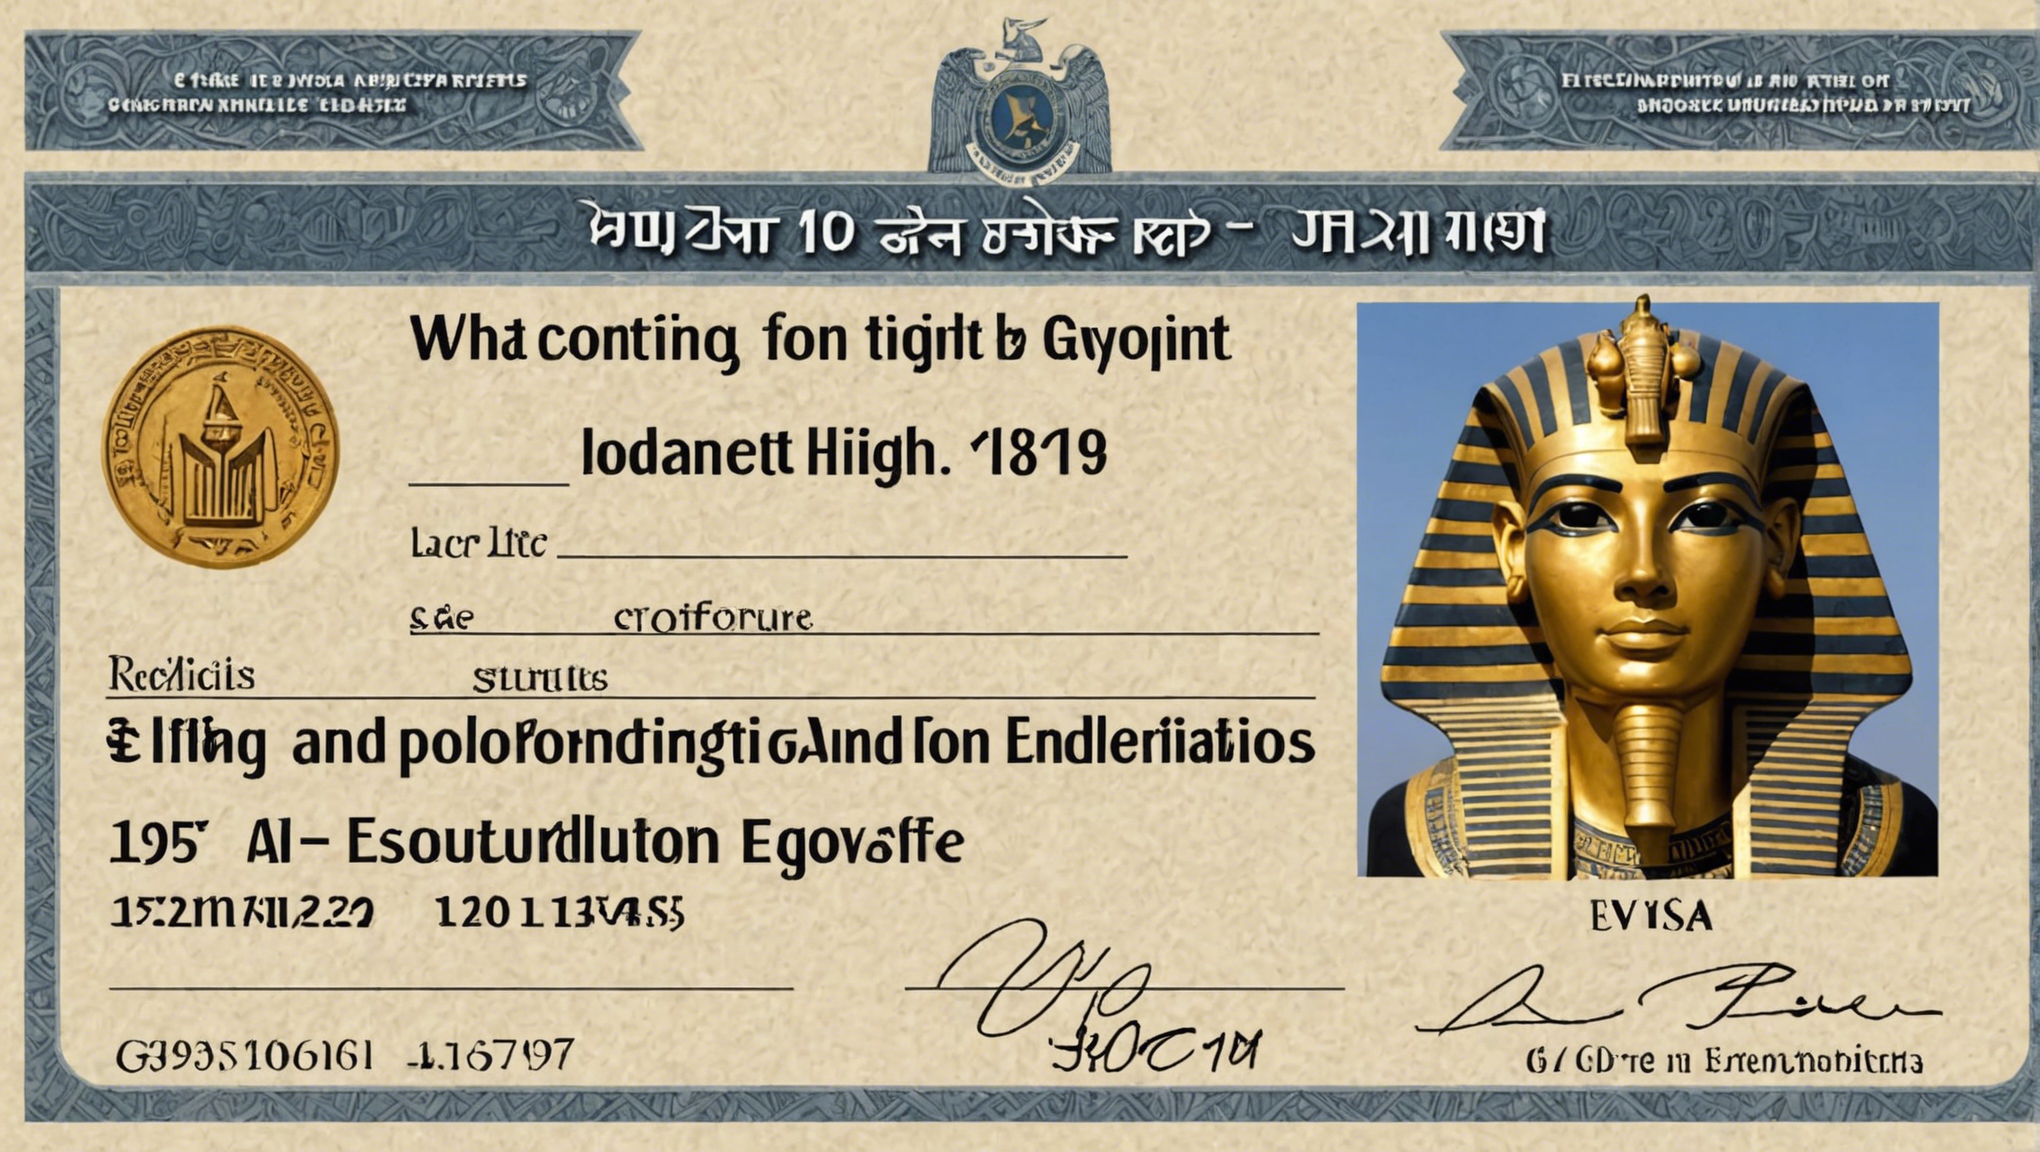 découvrez tout sur le visa électronique pour l'égypte : conditions, procédure, validité et démarches pour l'obtenir. réservez dès maintenant votre visa en ligne !